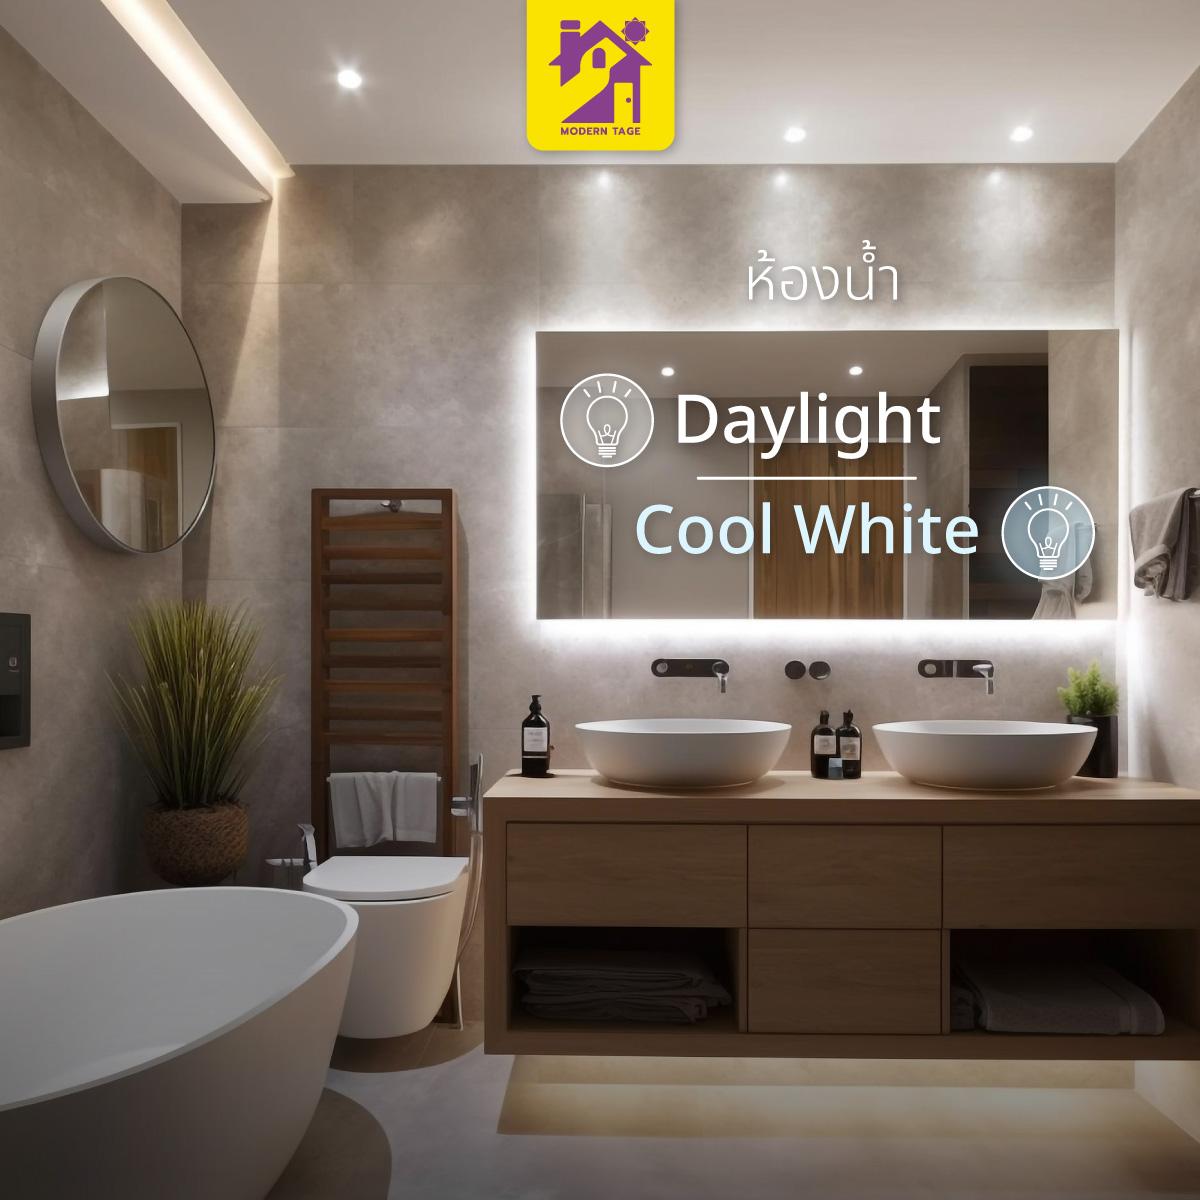 ห้องน้ำ Daylight หรือ Cool White